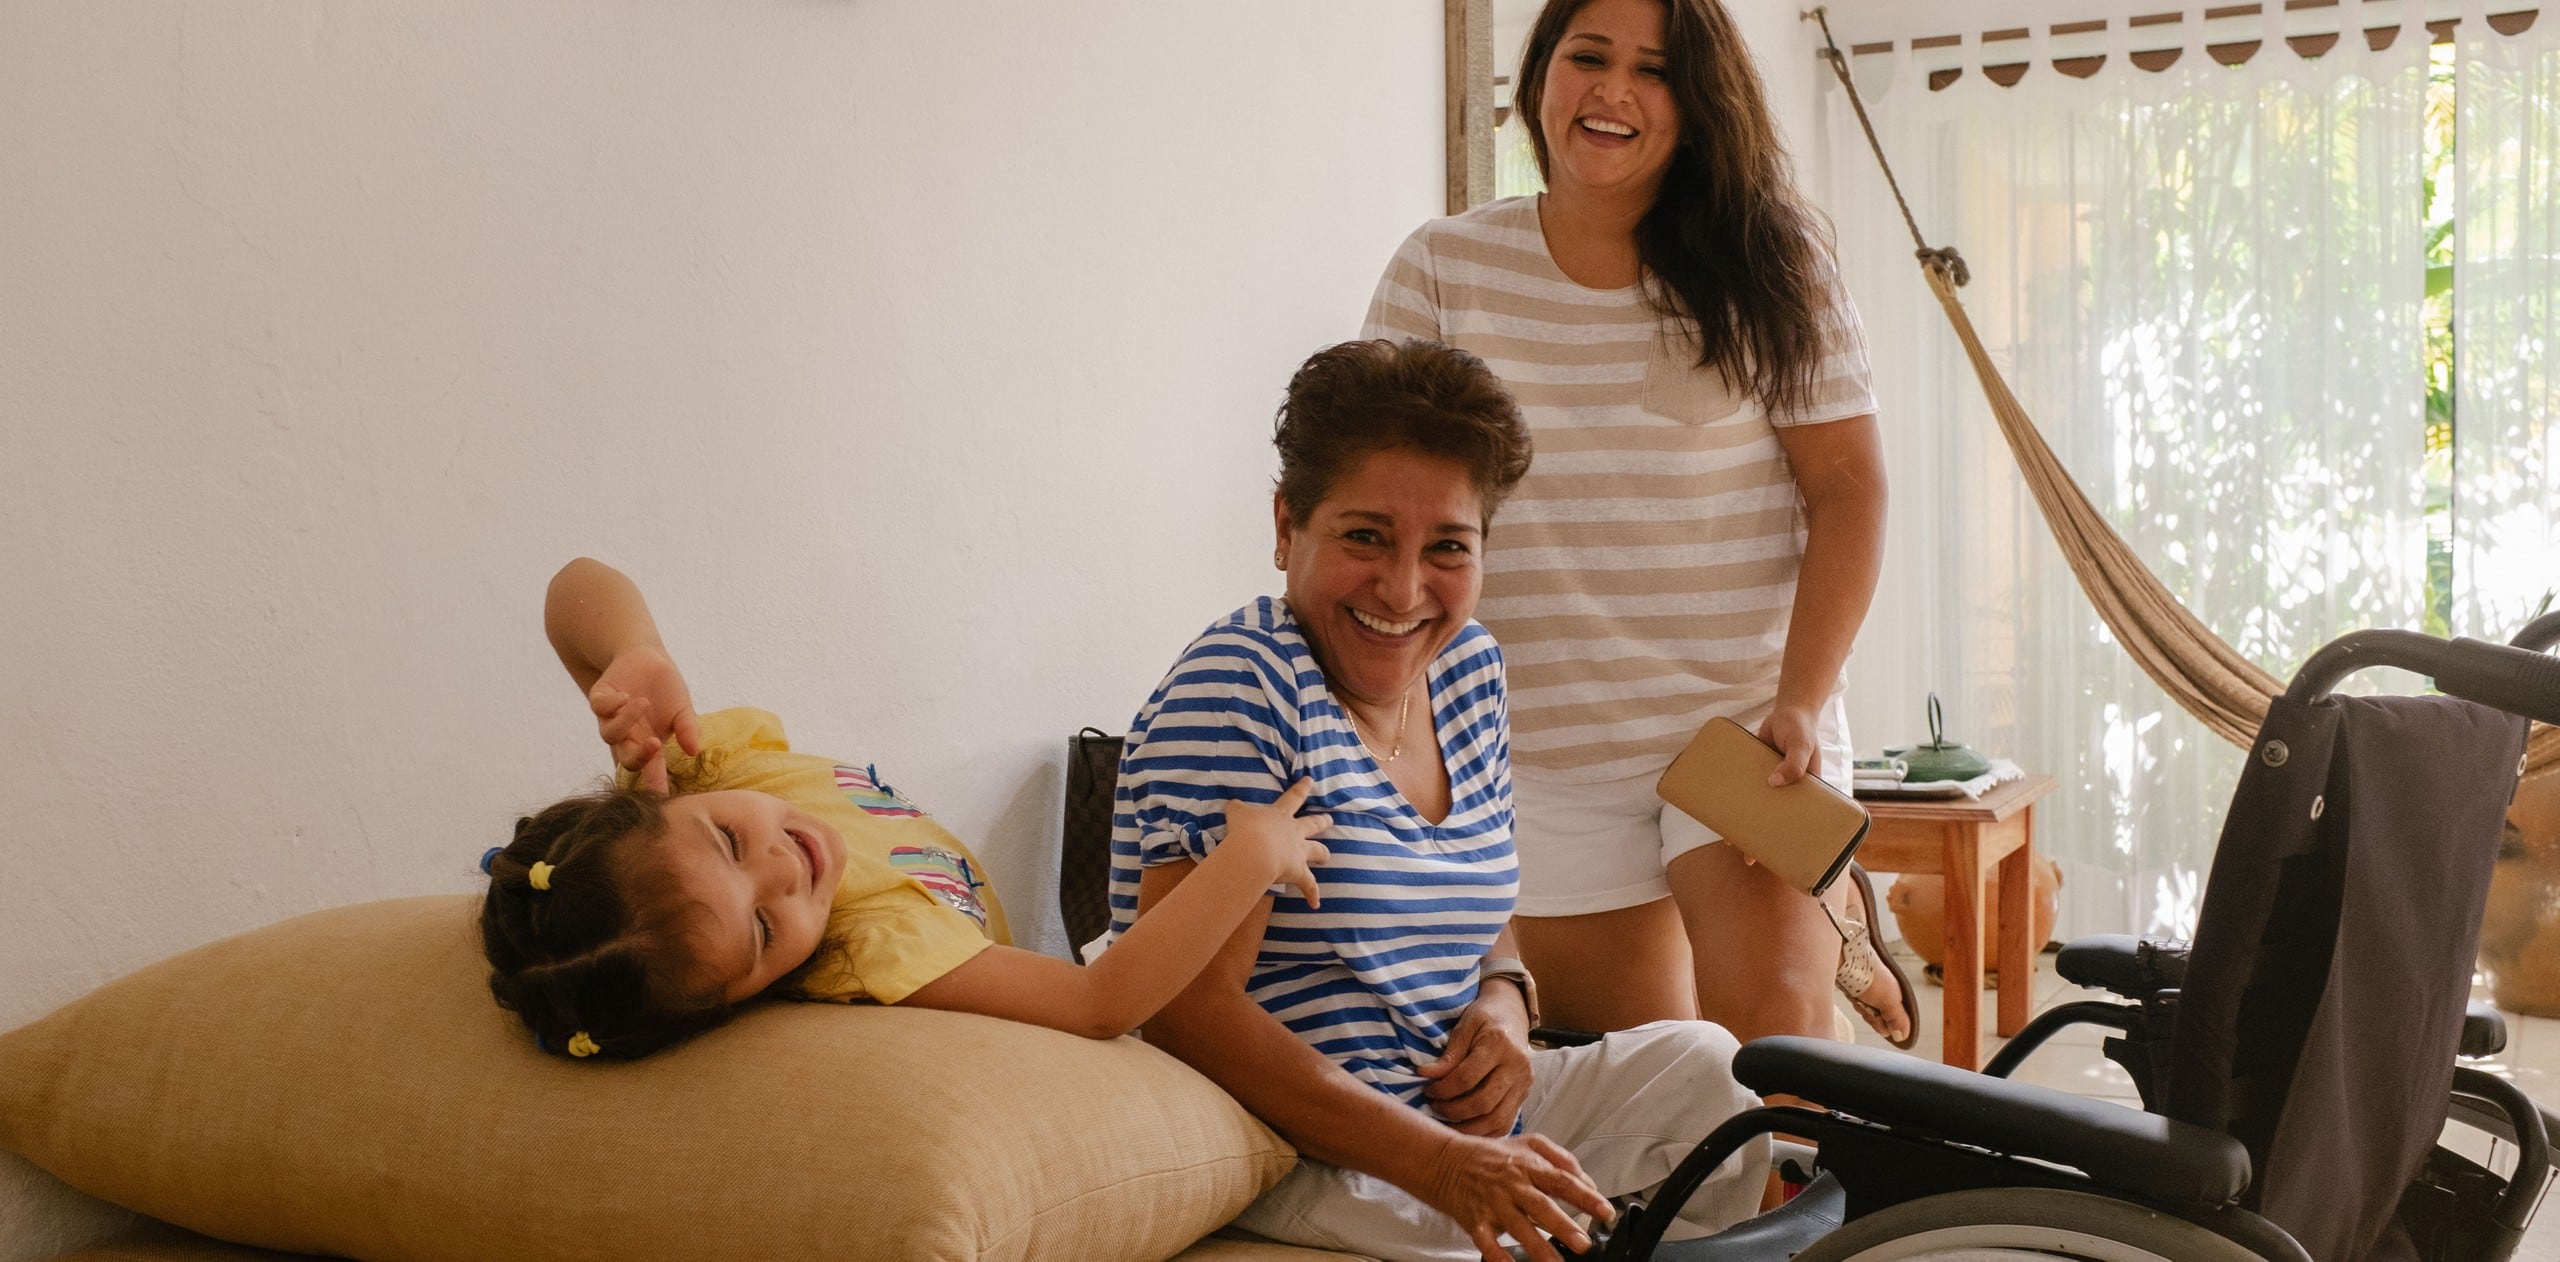 Tre generazioni di una famiglia sorridono in un alloggio Airbnb accessibile. Di fronte al membro più anziano della famiglia c'è una sedia a rotelle.